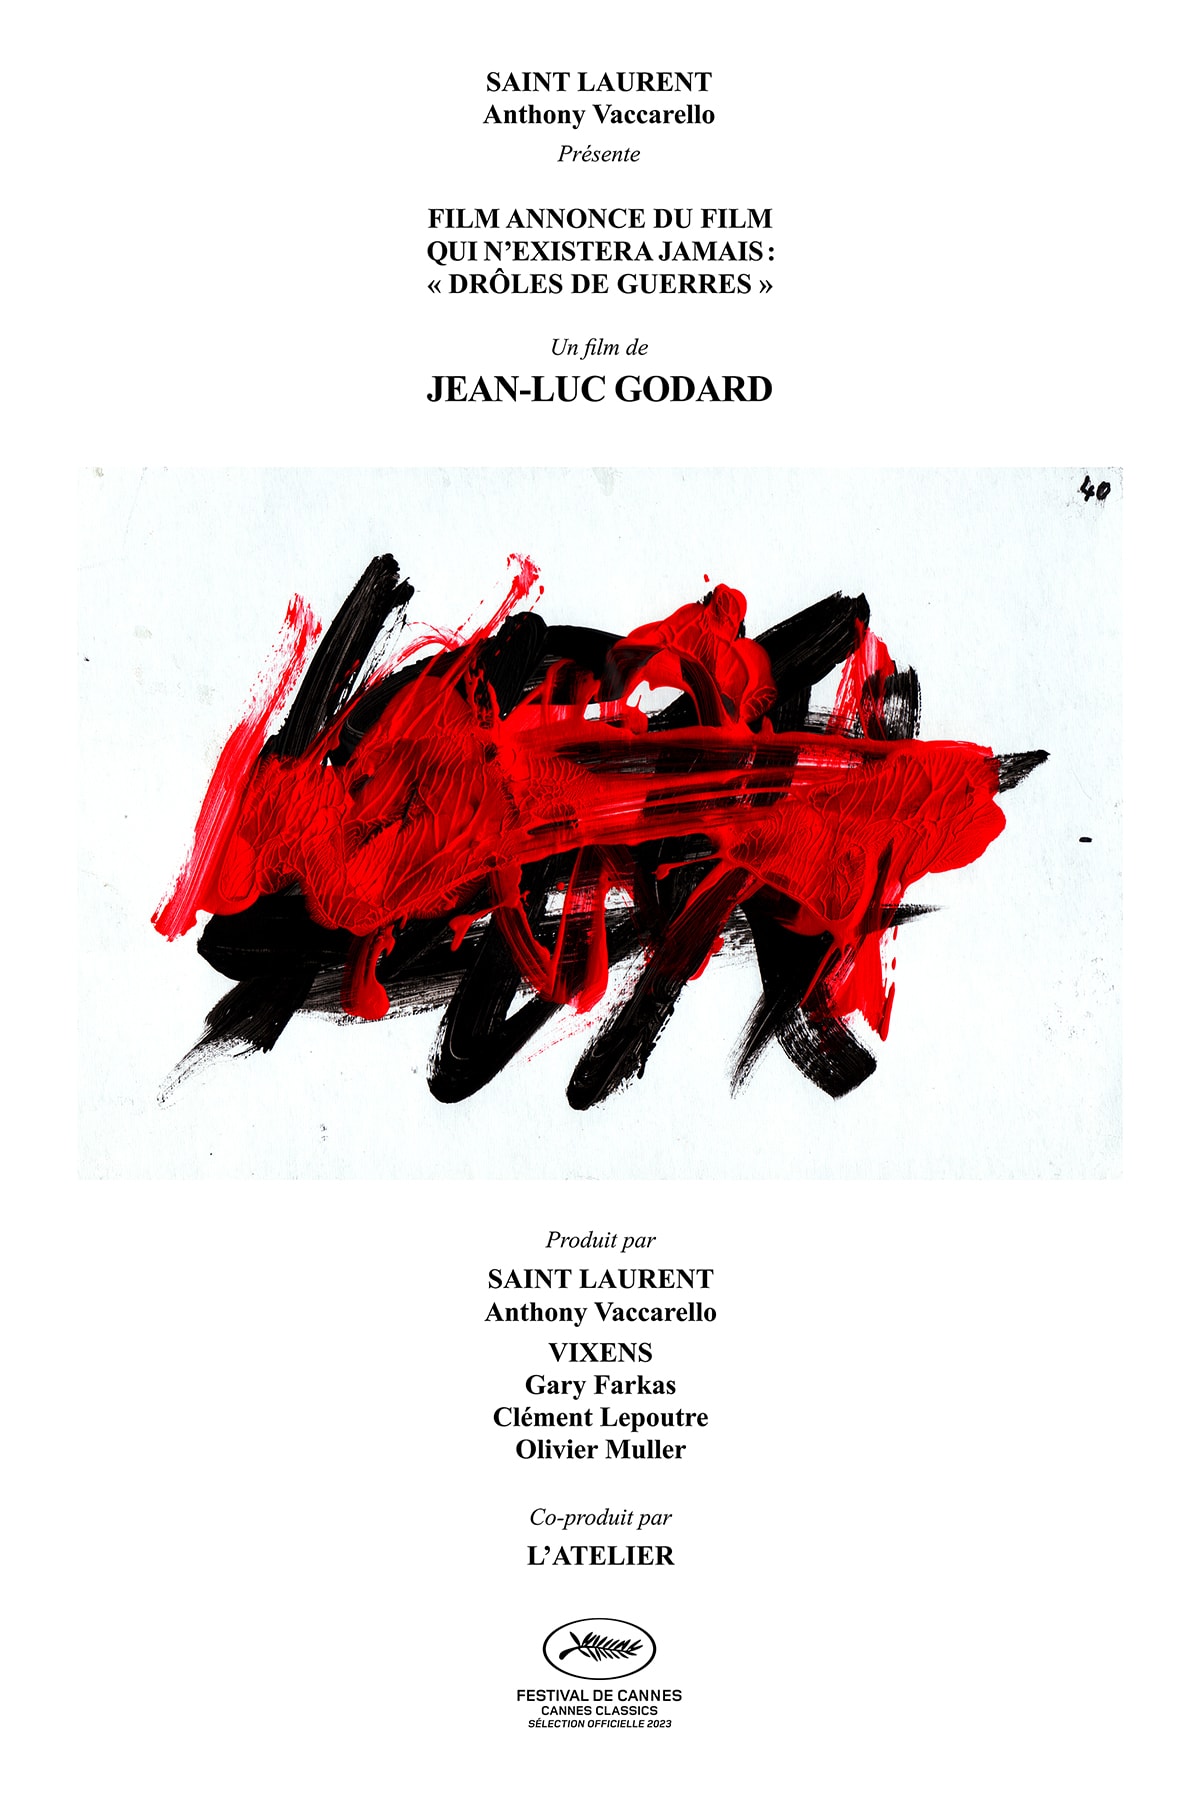 ジャン＝リュック・ゴダールの遺作がカンヌ国際映画祭でワールドプレミア上映 Jean-Luc Godard's last film will have its world premiere at the Cannes Film Festival 2023